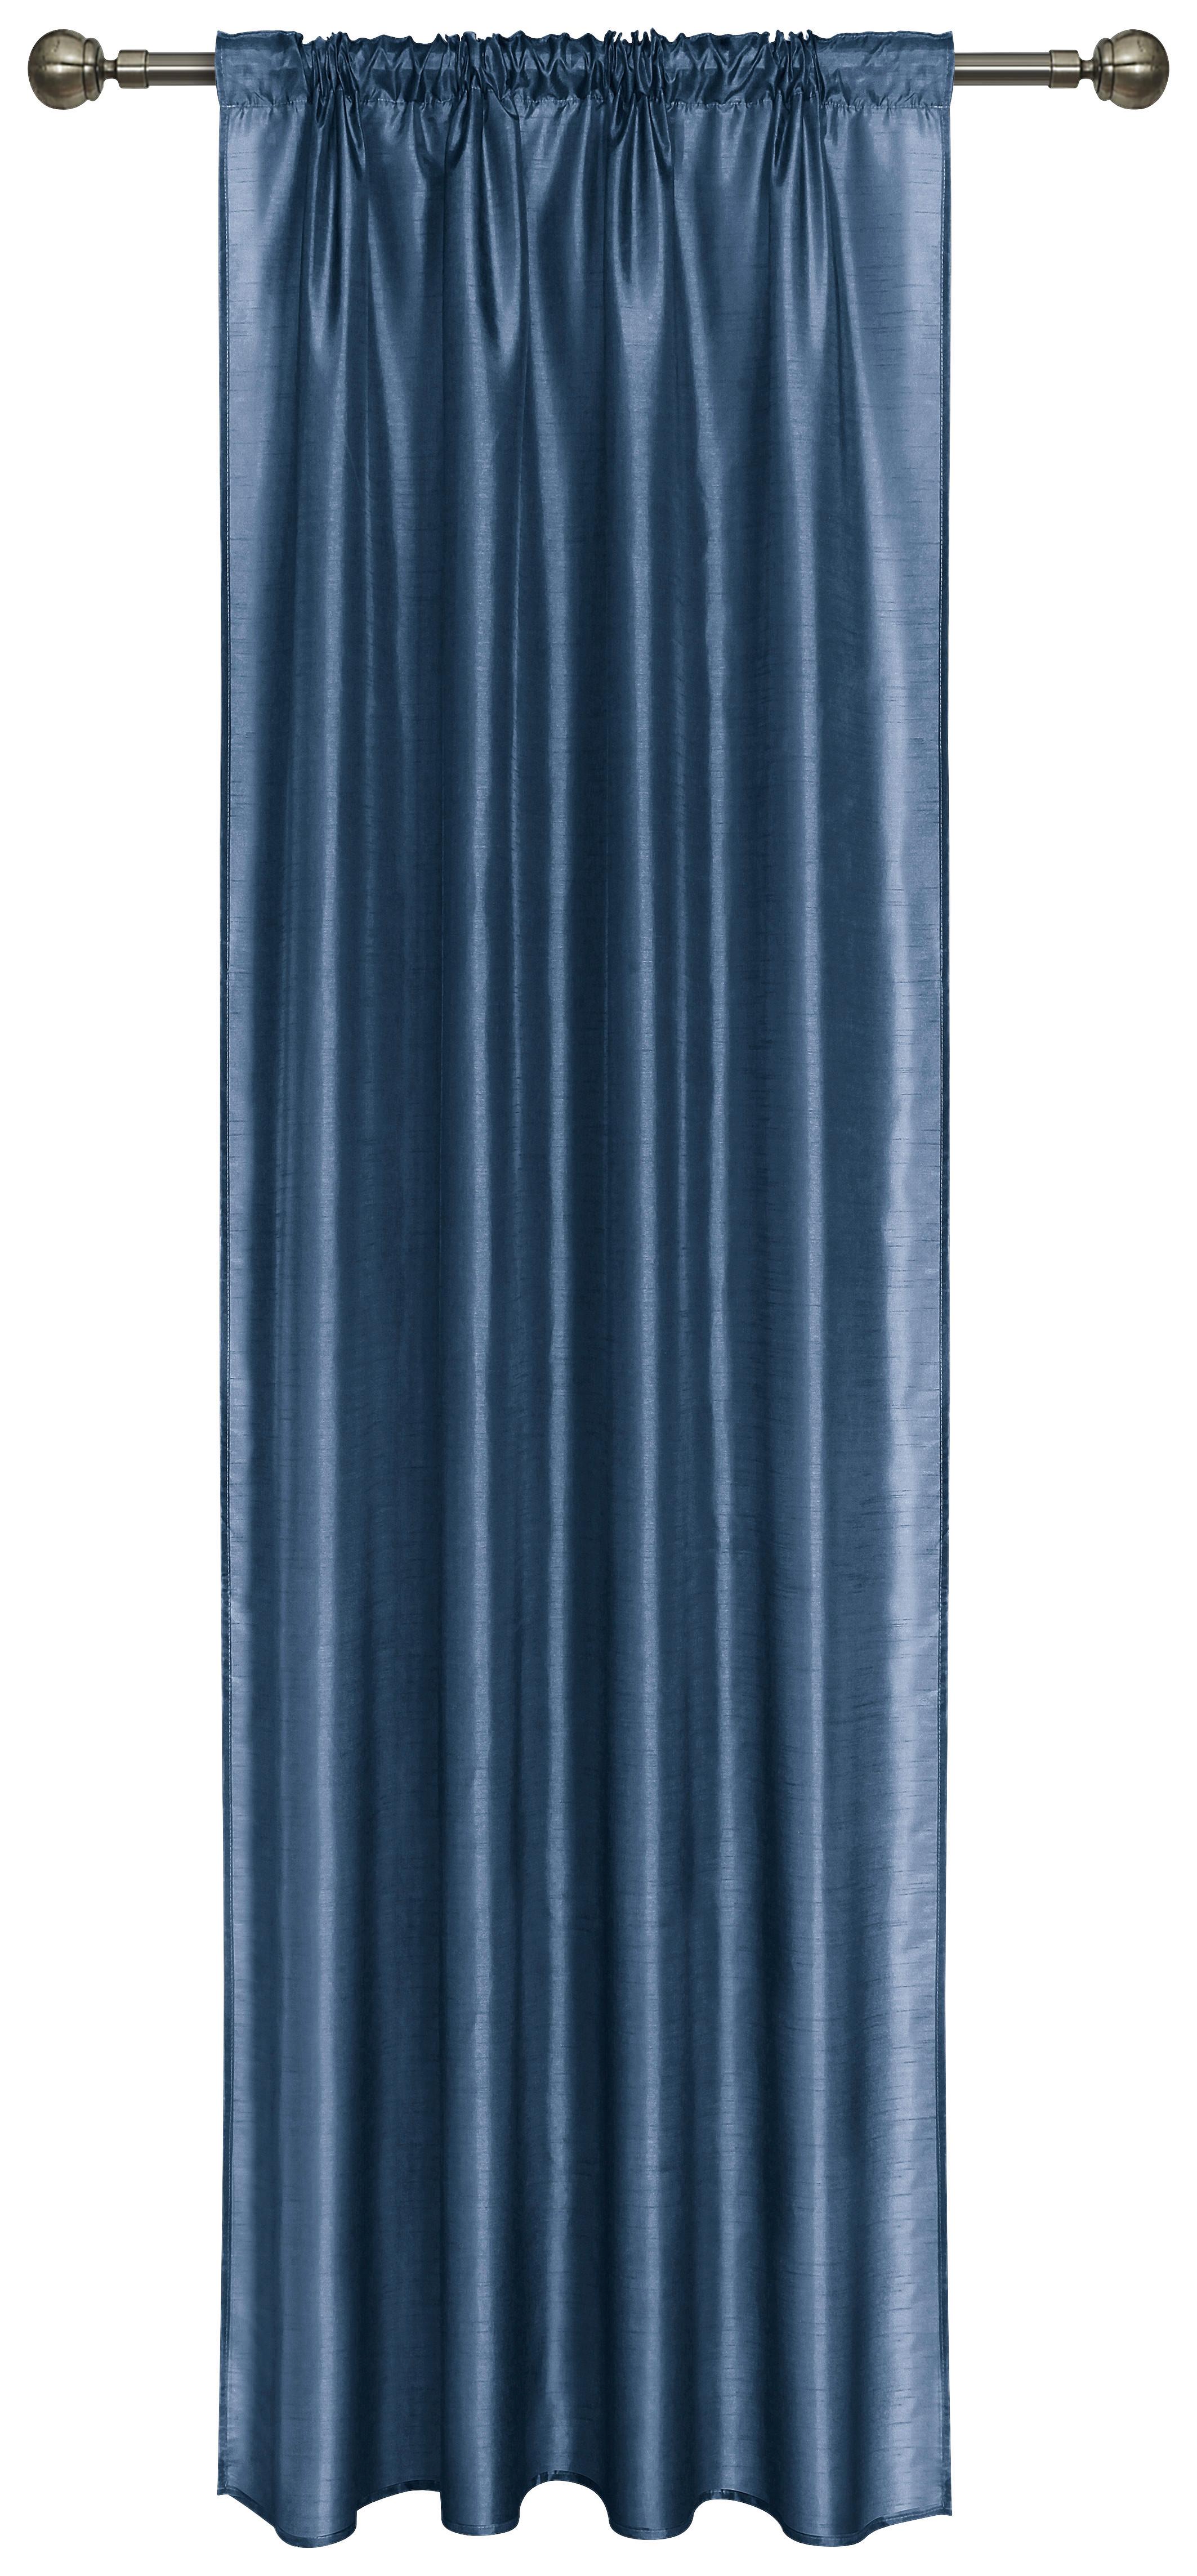 Készfüggöny Ulla - Kék, romantikus/Landhaus, Textil (140/245cm) - James Wood